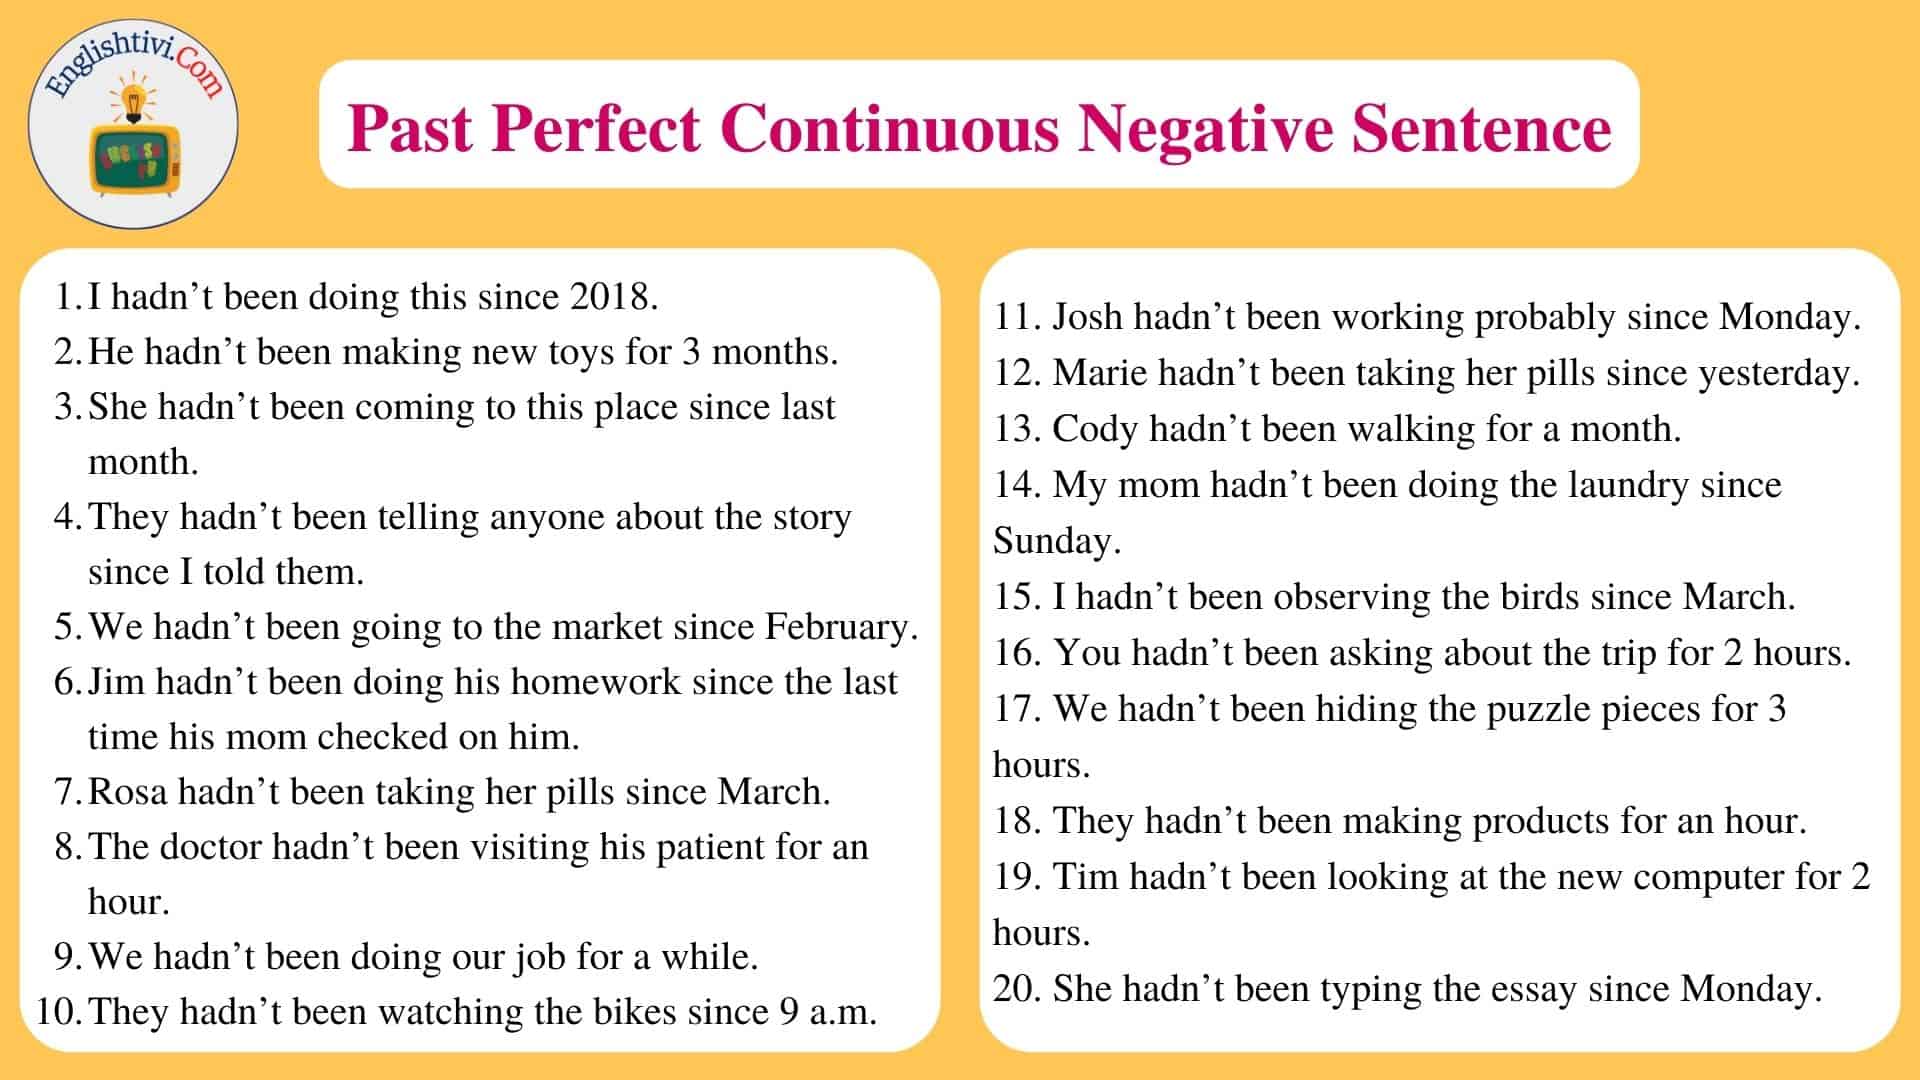 Past Perfect Continuous Negative Sentence